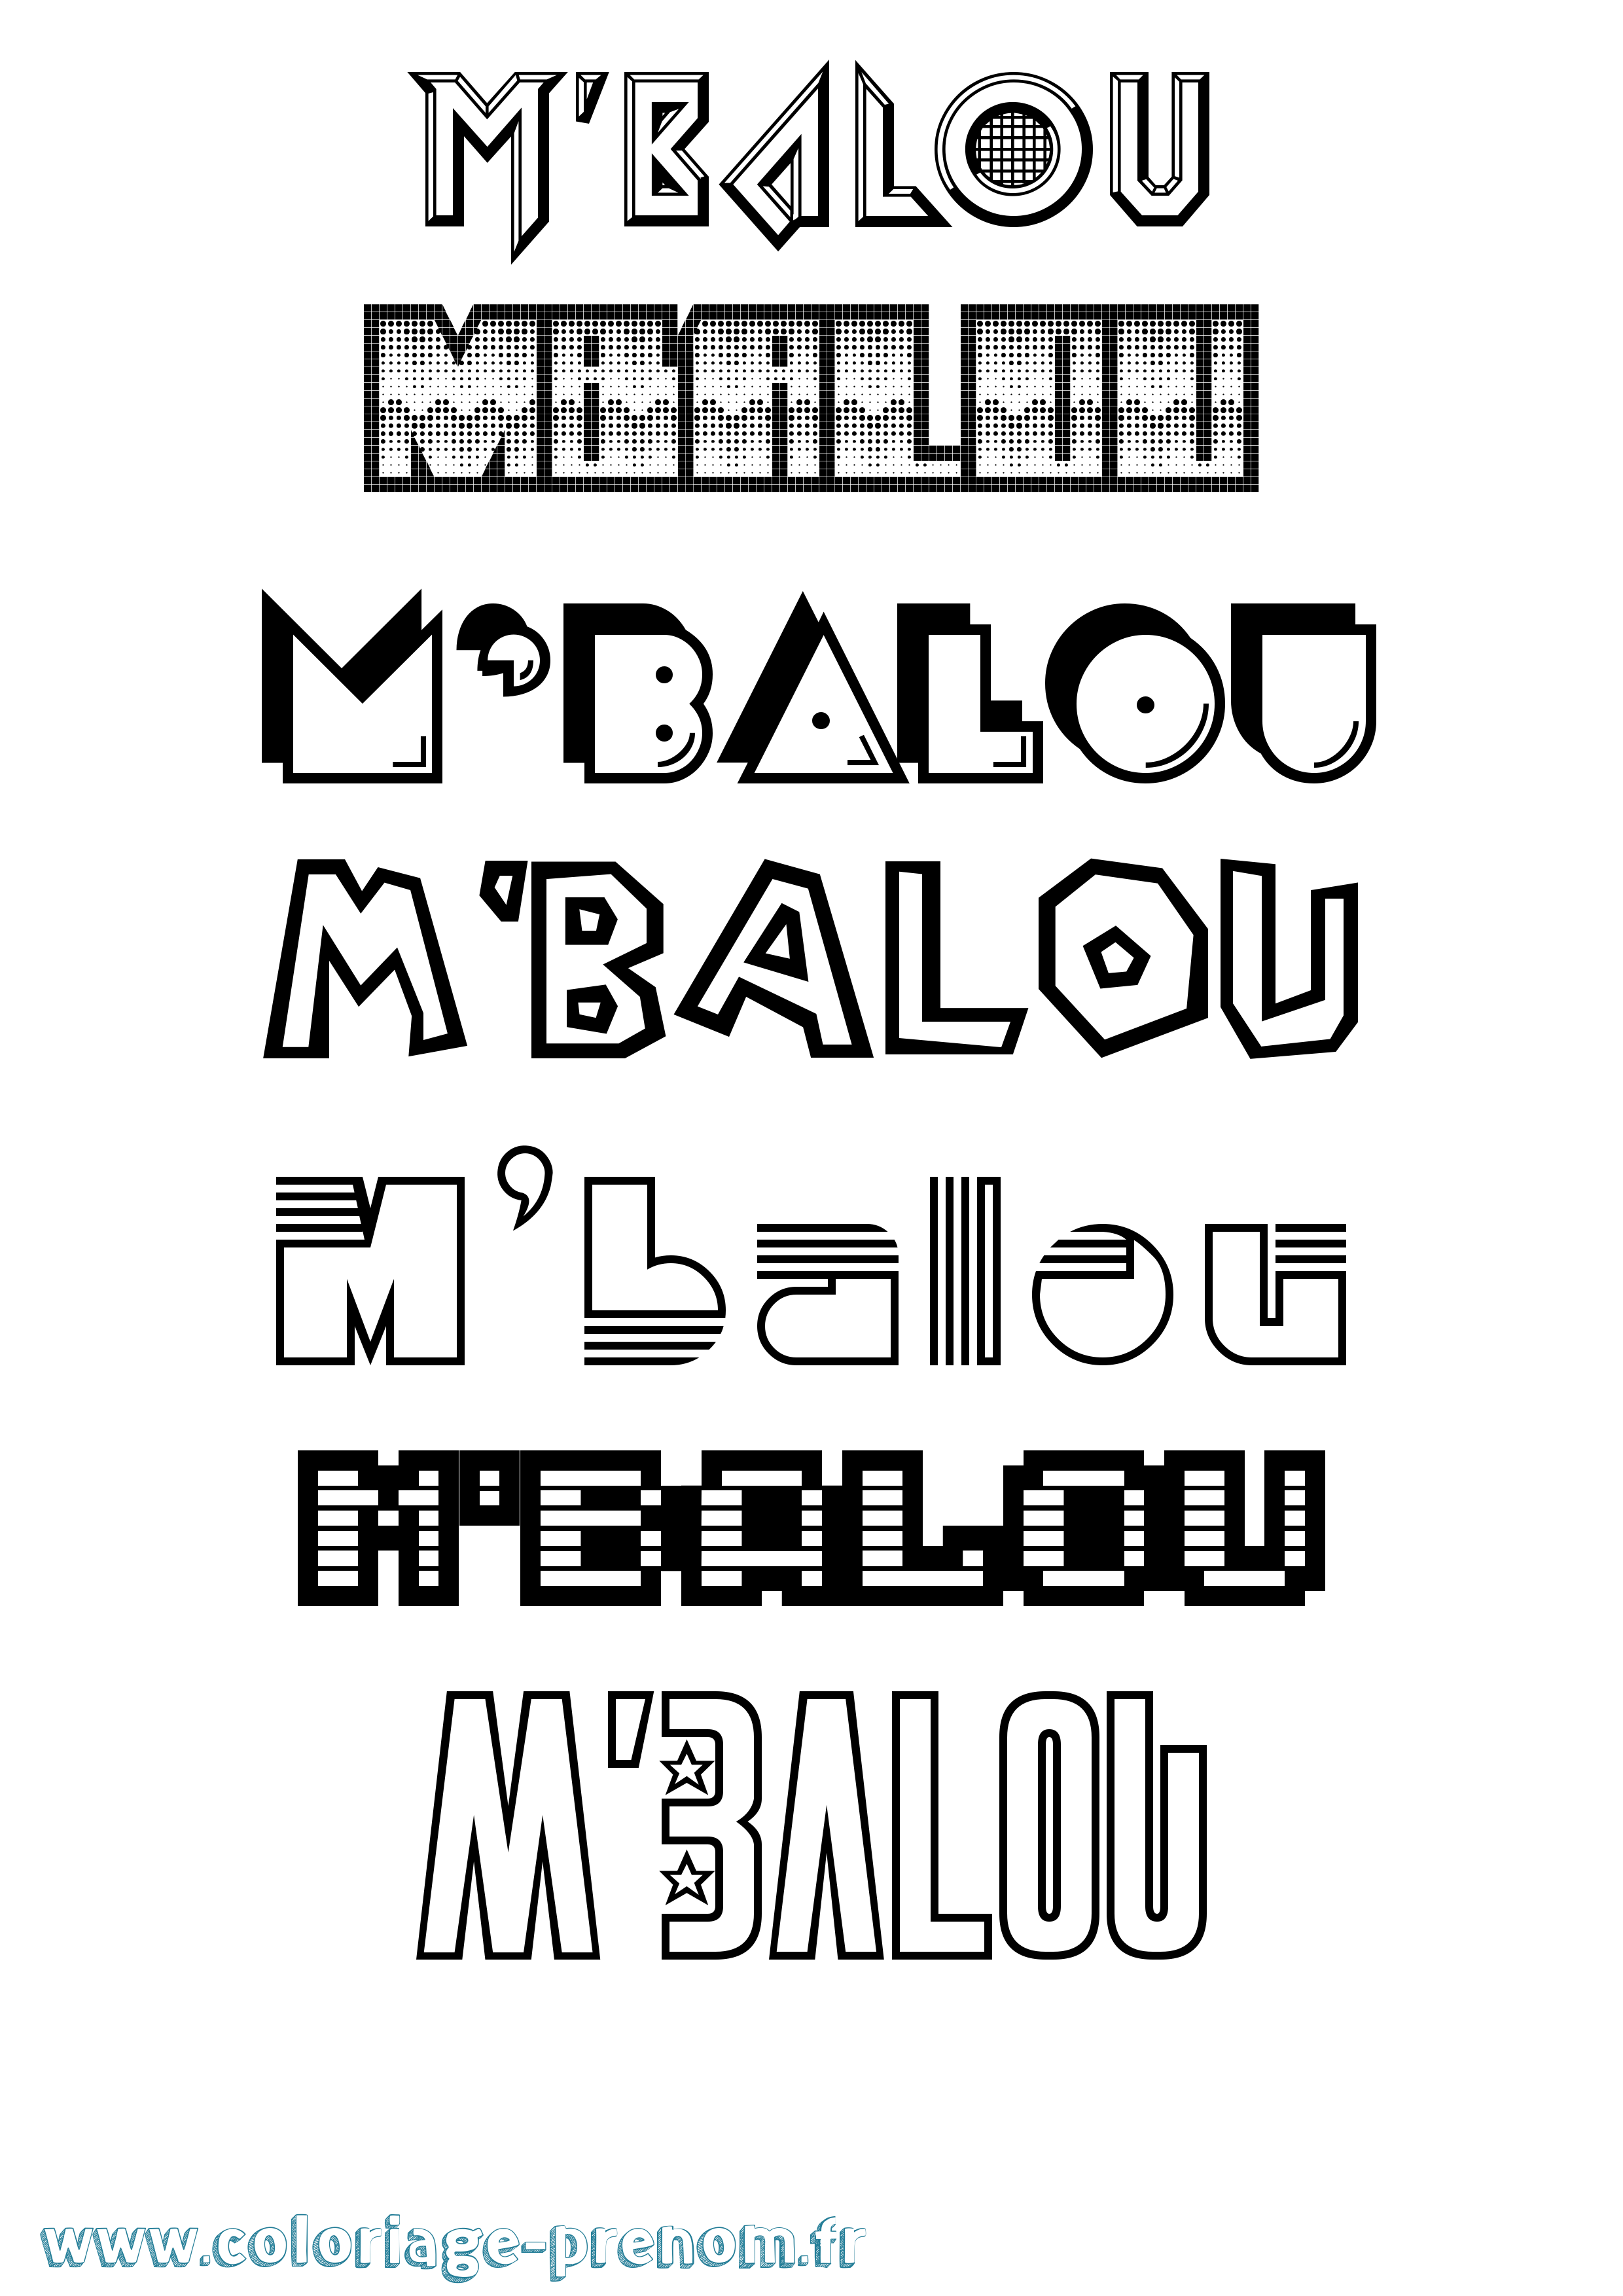 Coloriage prénom M'Balou Jeux Vidéos